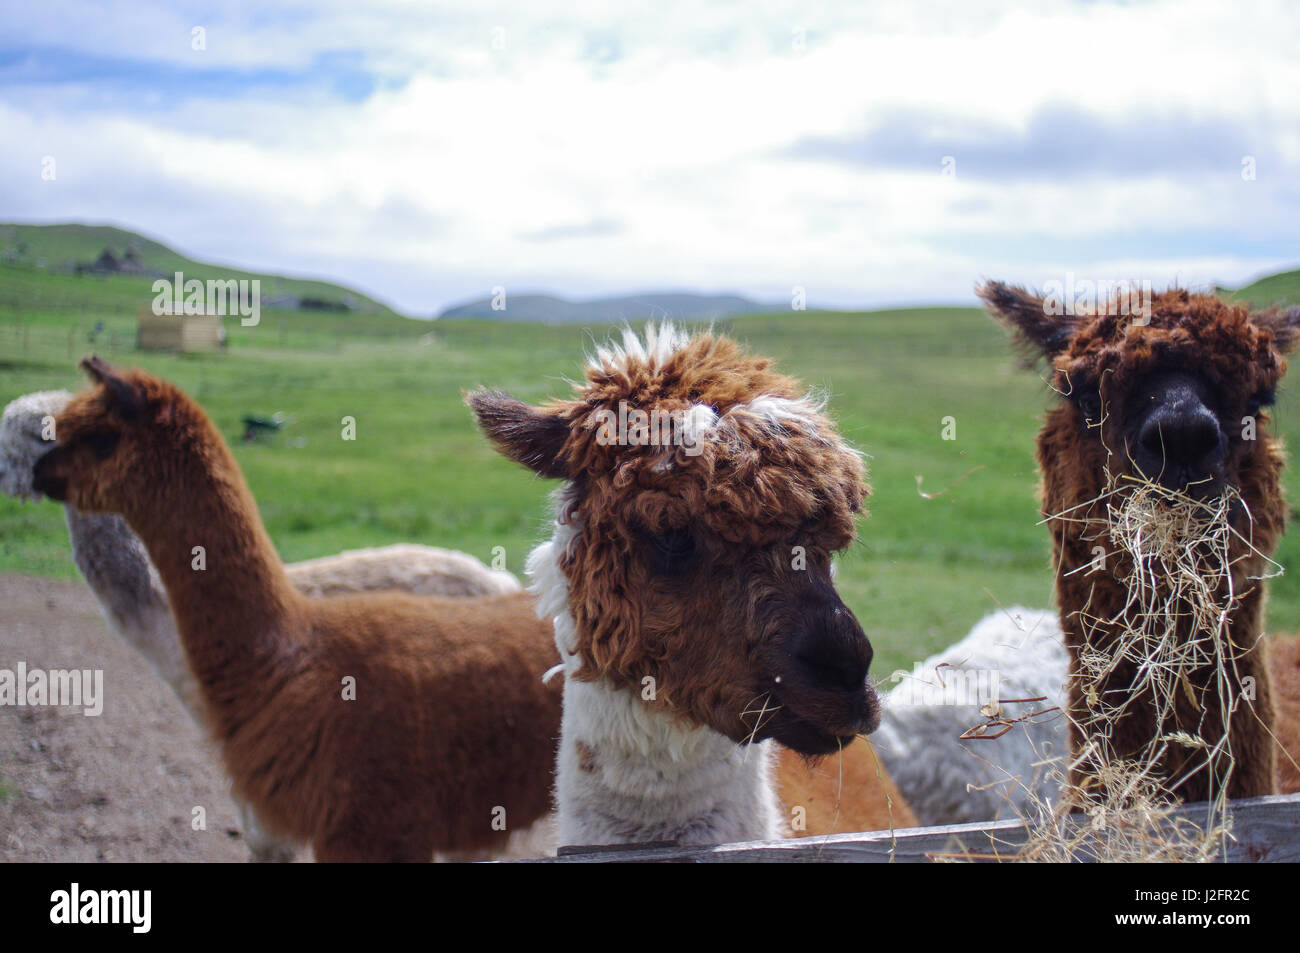 Llamas feeding on a remote farm in Shetland, Scotland. Llama cheese is mad from llama milk. These llamas seem happy. Stock Photo